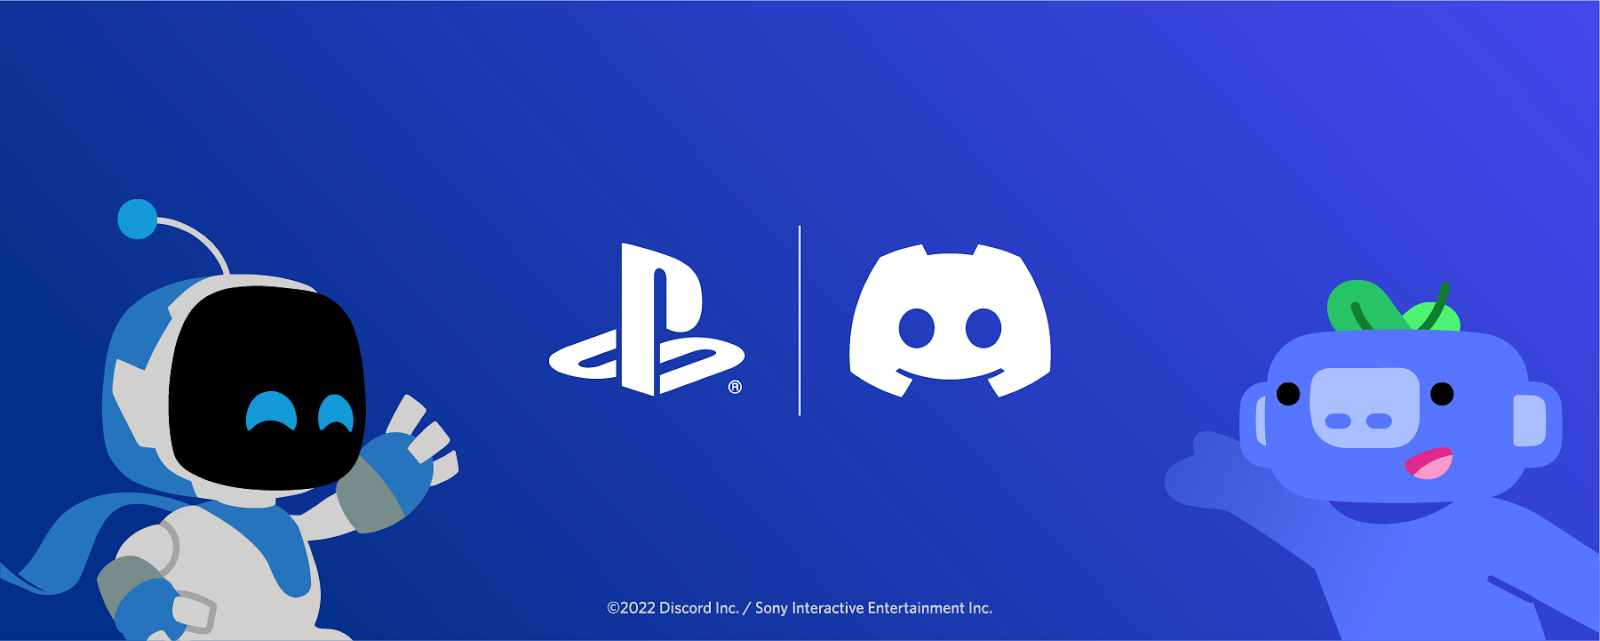 Si dice che Discord arriverà presto su PlayStation.  era ora!